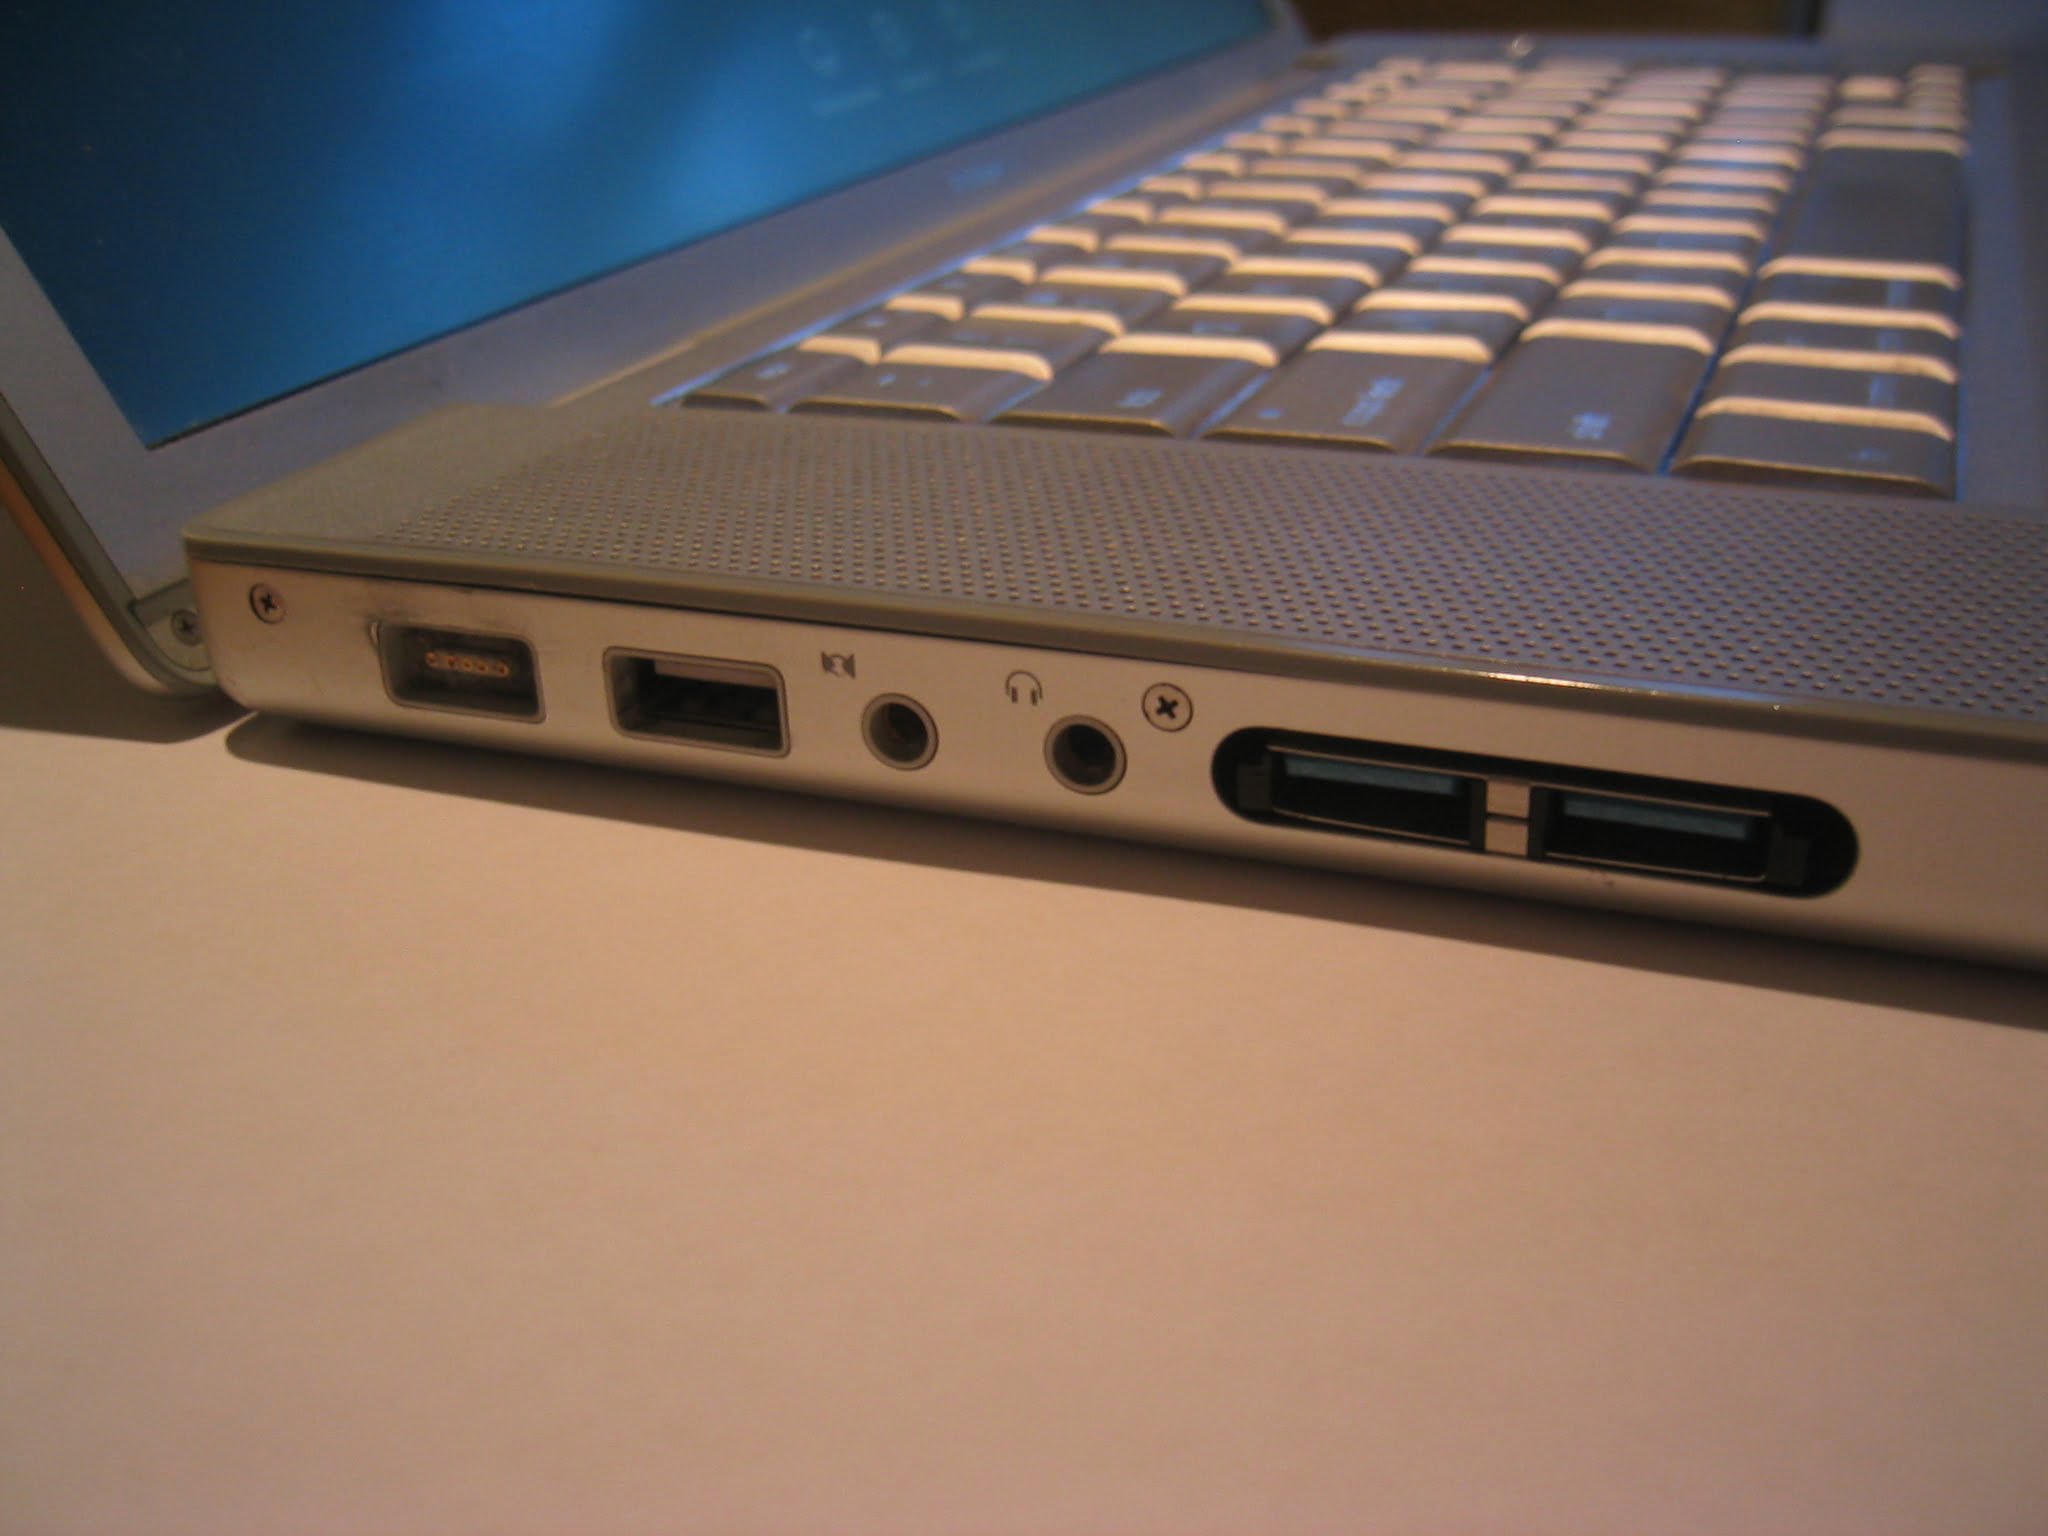 3-in-1 8-pin/Micro-USB/USB 3.0 OTG Flash Drive (16GB)